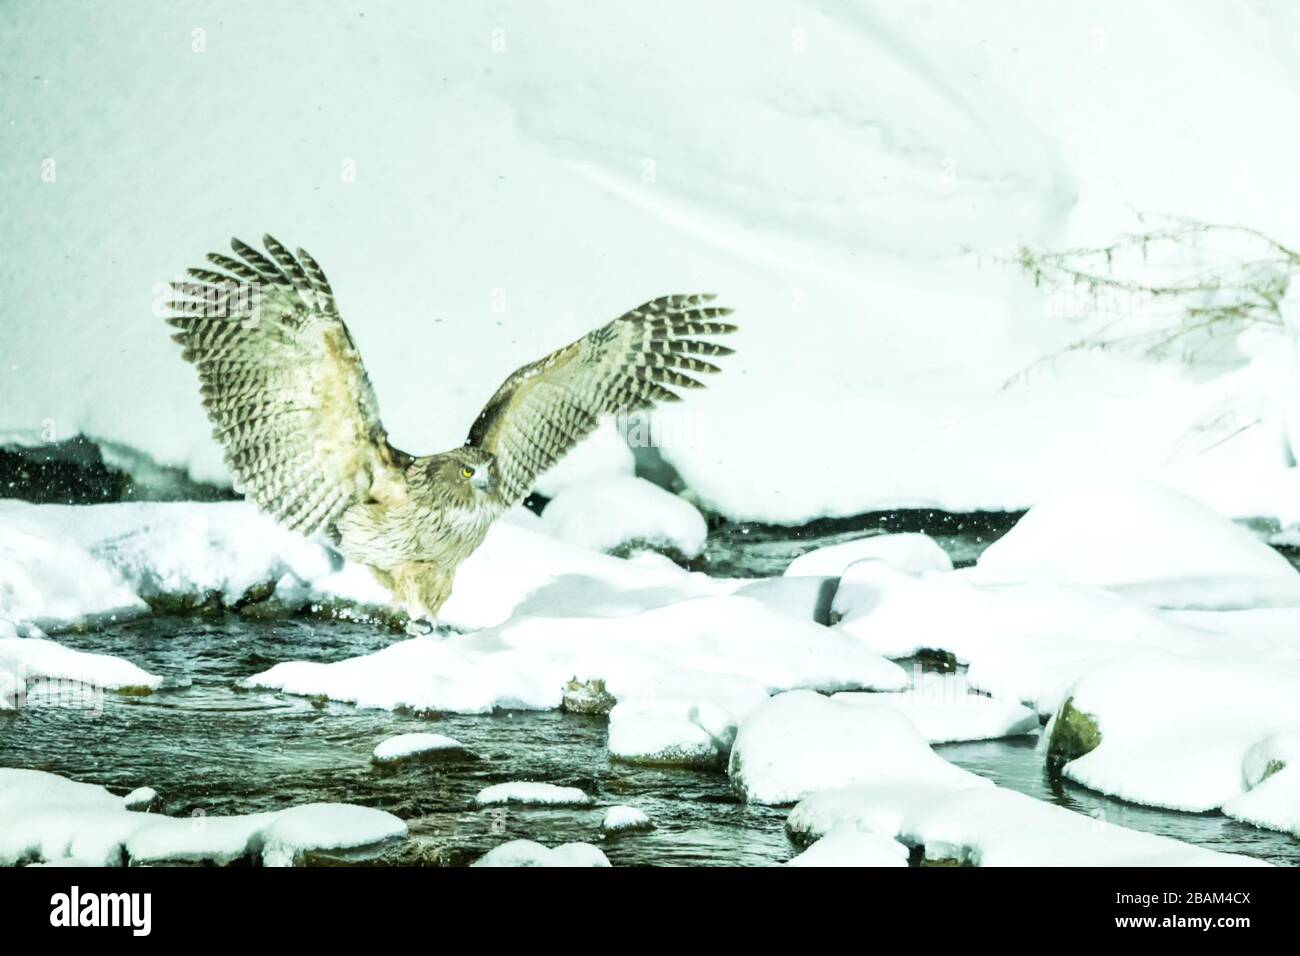 La chouette de poissons de Blakiston, la chasse aux oiseaux dans les poissons dans le ruisseau d'eau froide, la beauté naturelle unique de Hokkaido, Japon, l'aventure d'oiseaux en Asie, grand oiseau de pêche Banque D'Images